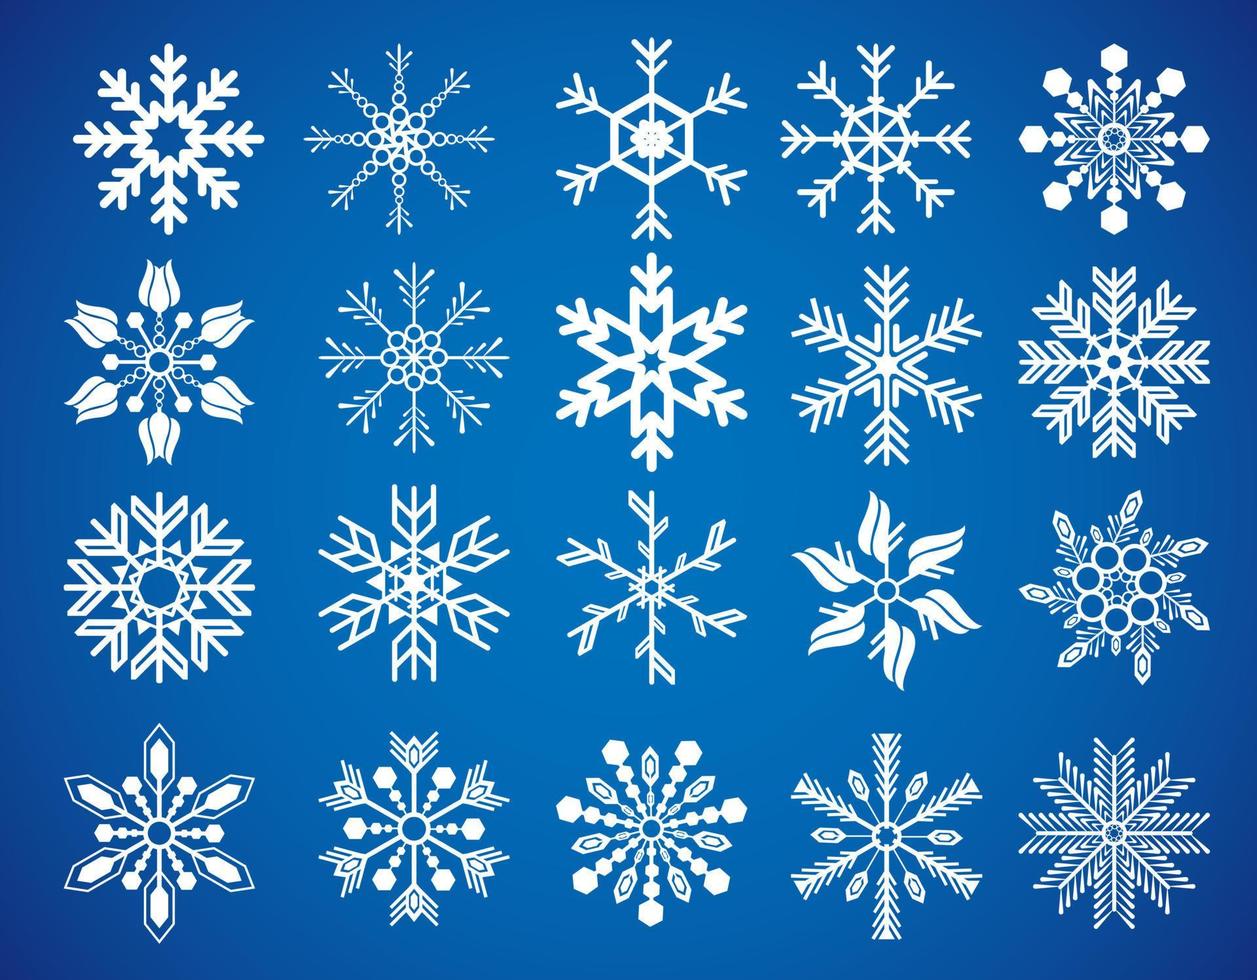 set di nuovi fiocchi di neve vettoriali. set di icone di fiocchi di neve. vettore di disegno di natale. fiocchi di neve bianchi isolati su sfondo blu.